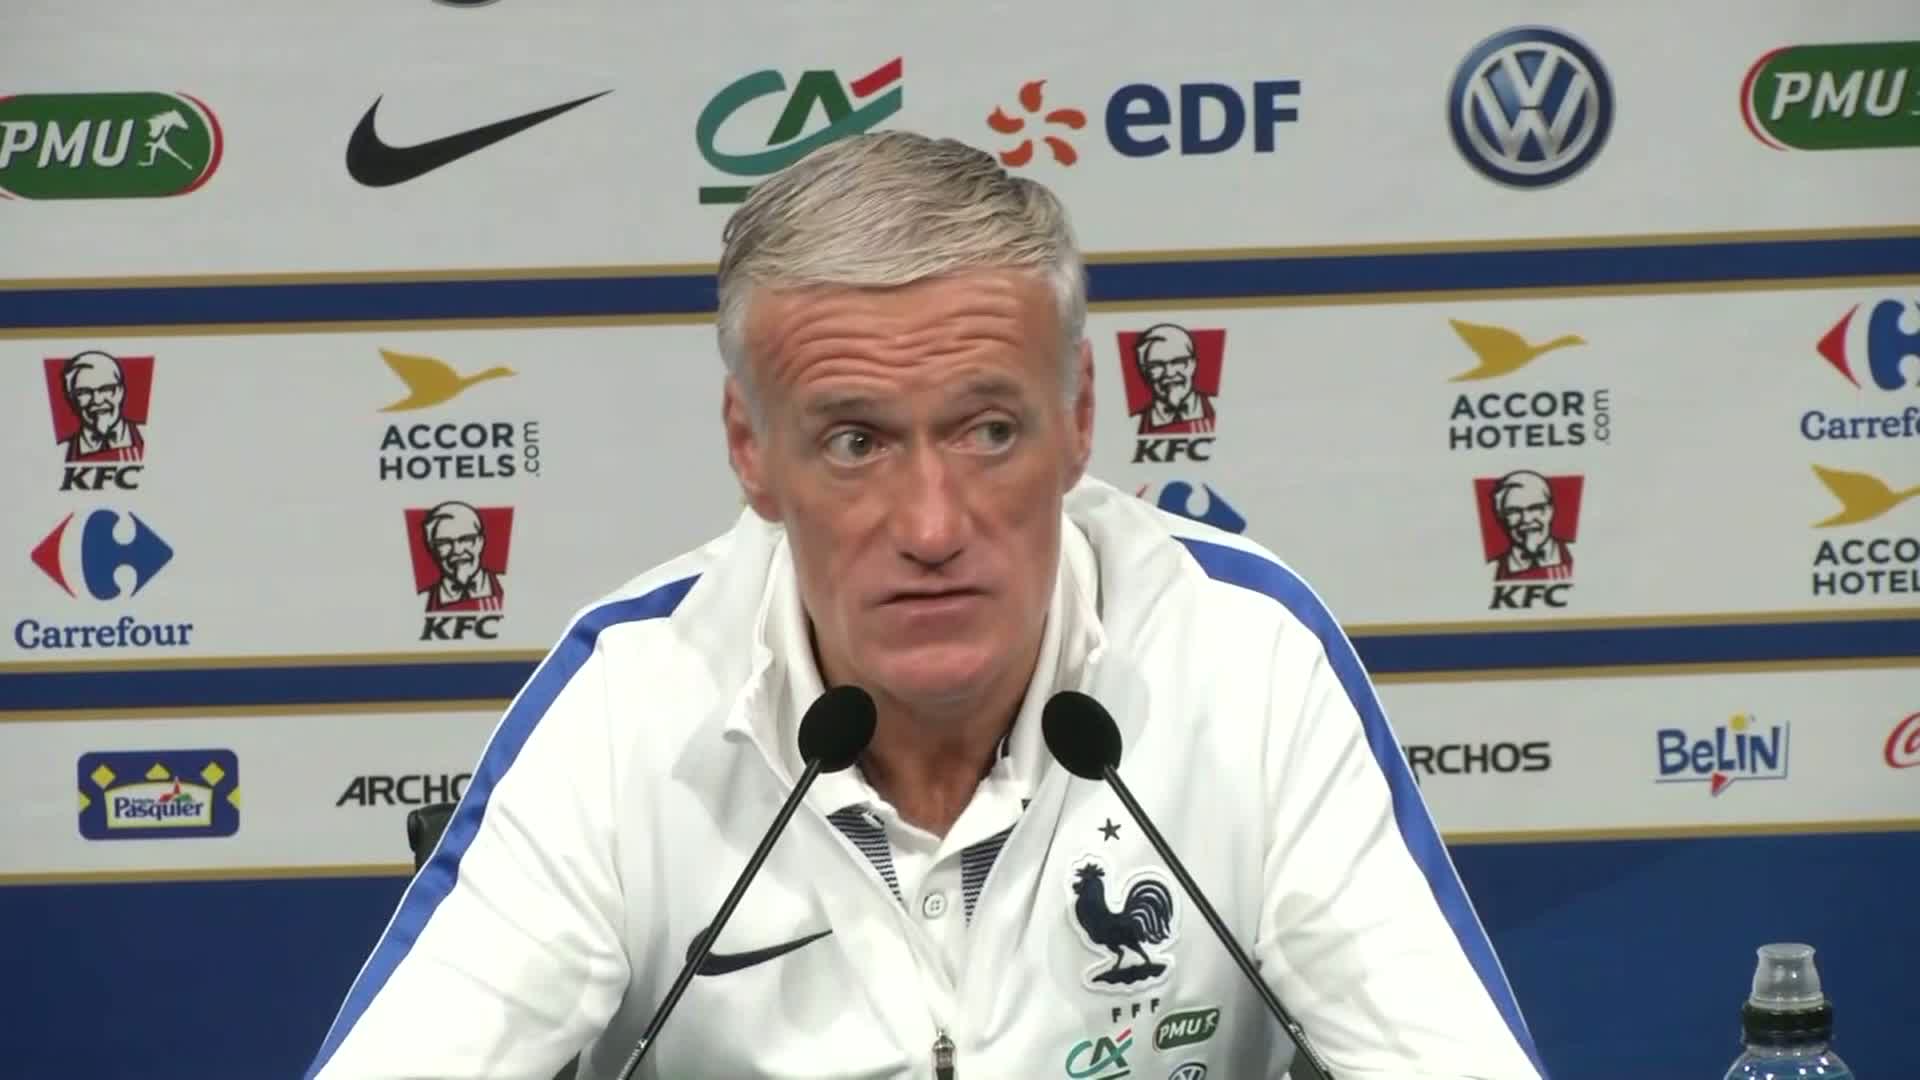 Didier Deschamps, sélectionneur de l'équipe de France